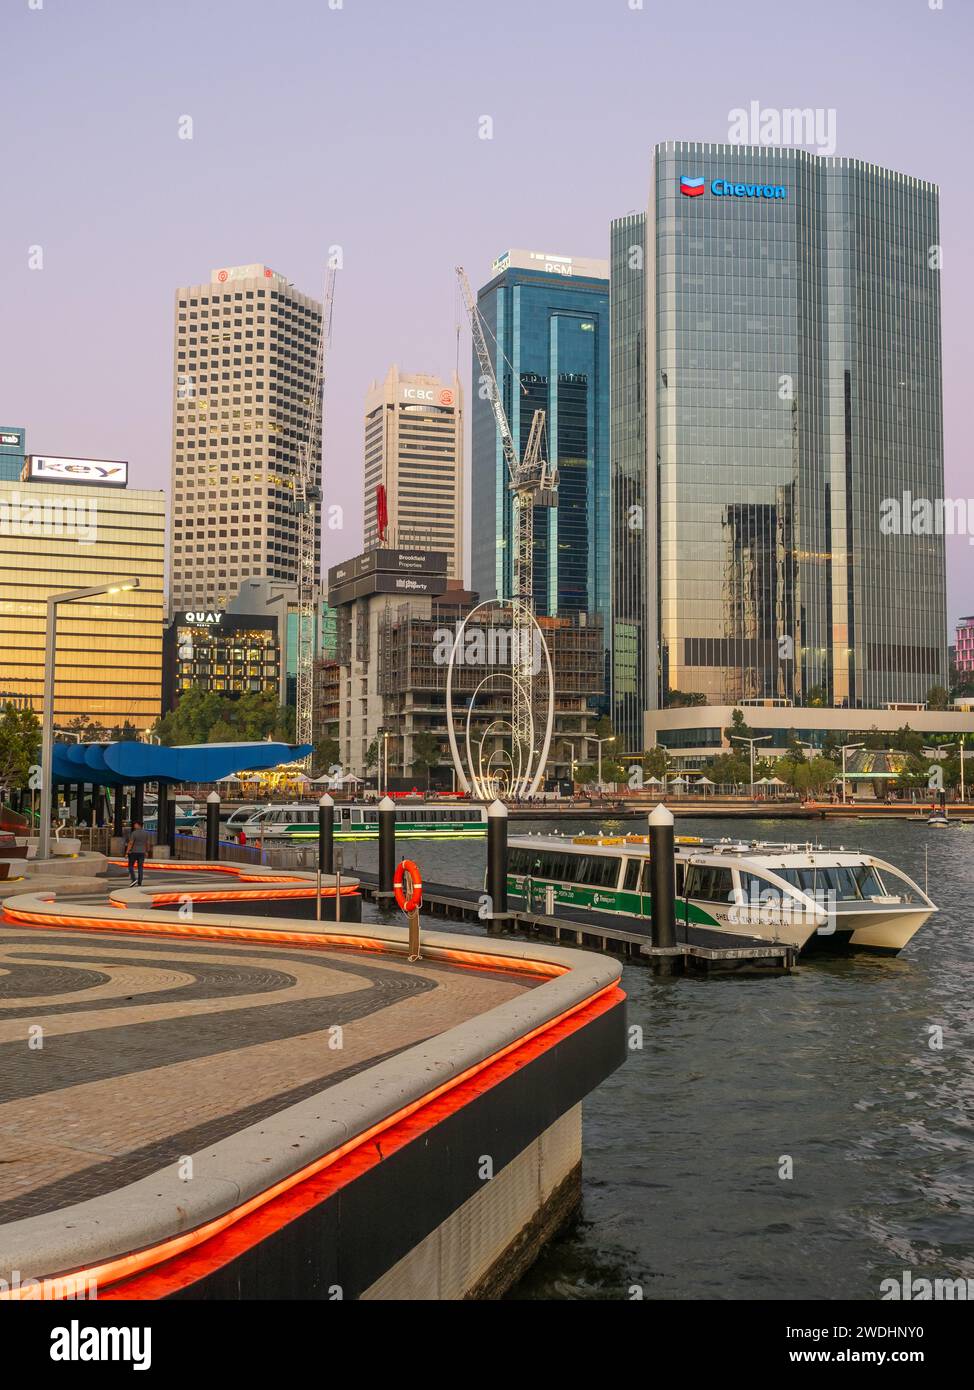 Un ferry a accosté à Elizabeth Quay, dans le quartier central des affaires de Perth en Australie occidentale. Banque D'Images